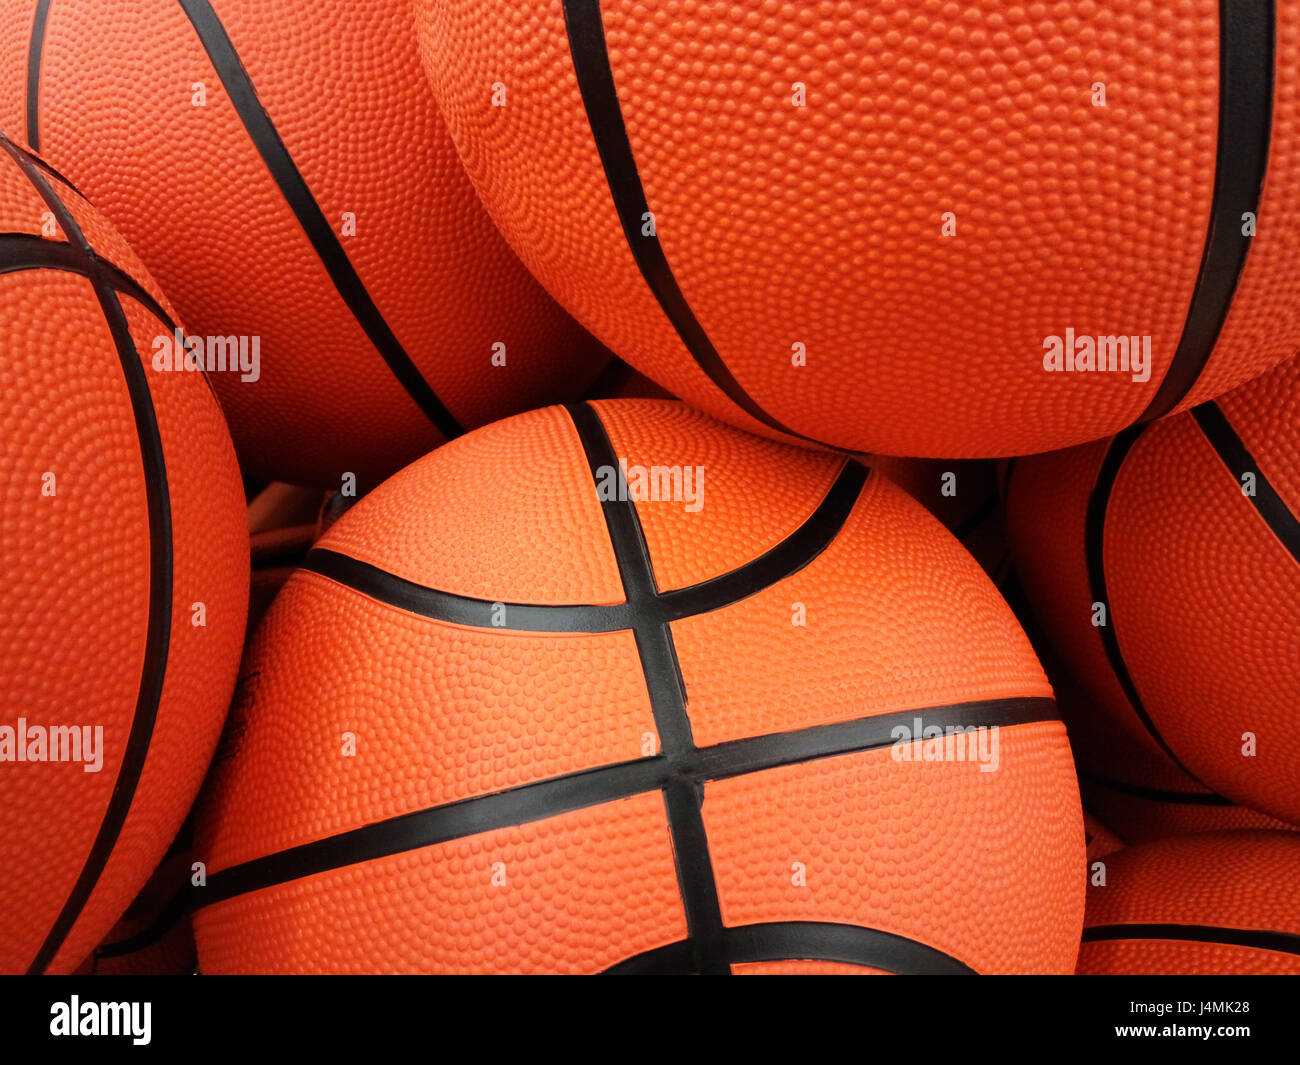 Fondo de pantalla de baloncesto fotografías e imágenes de alta resolución -  Alamy